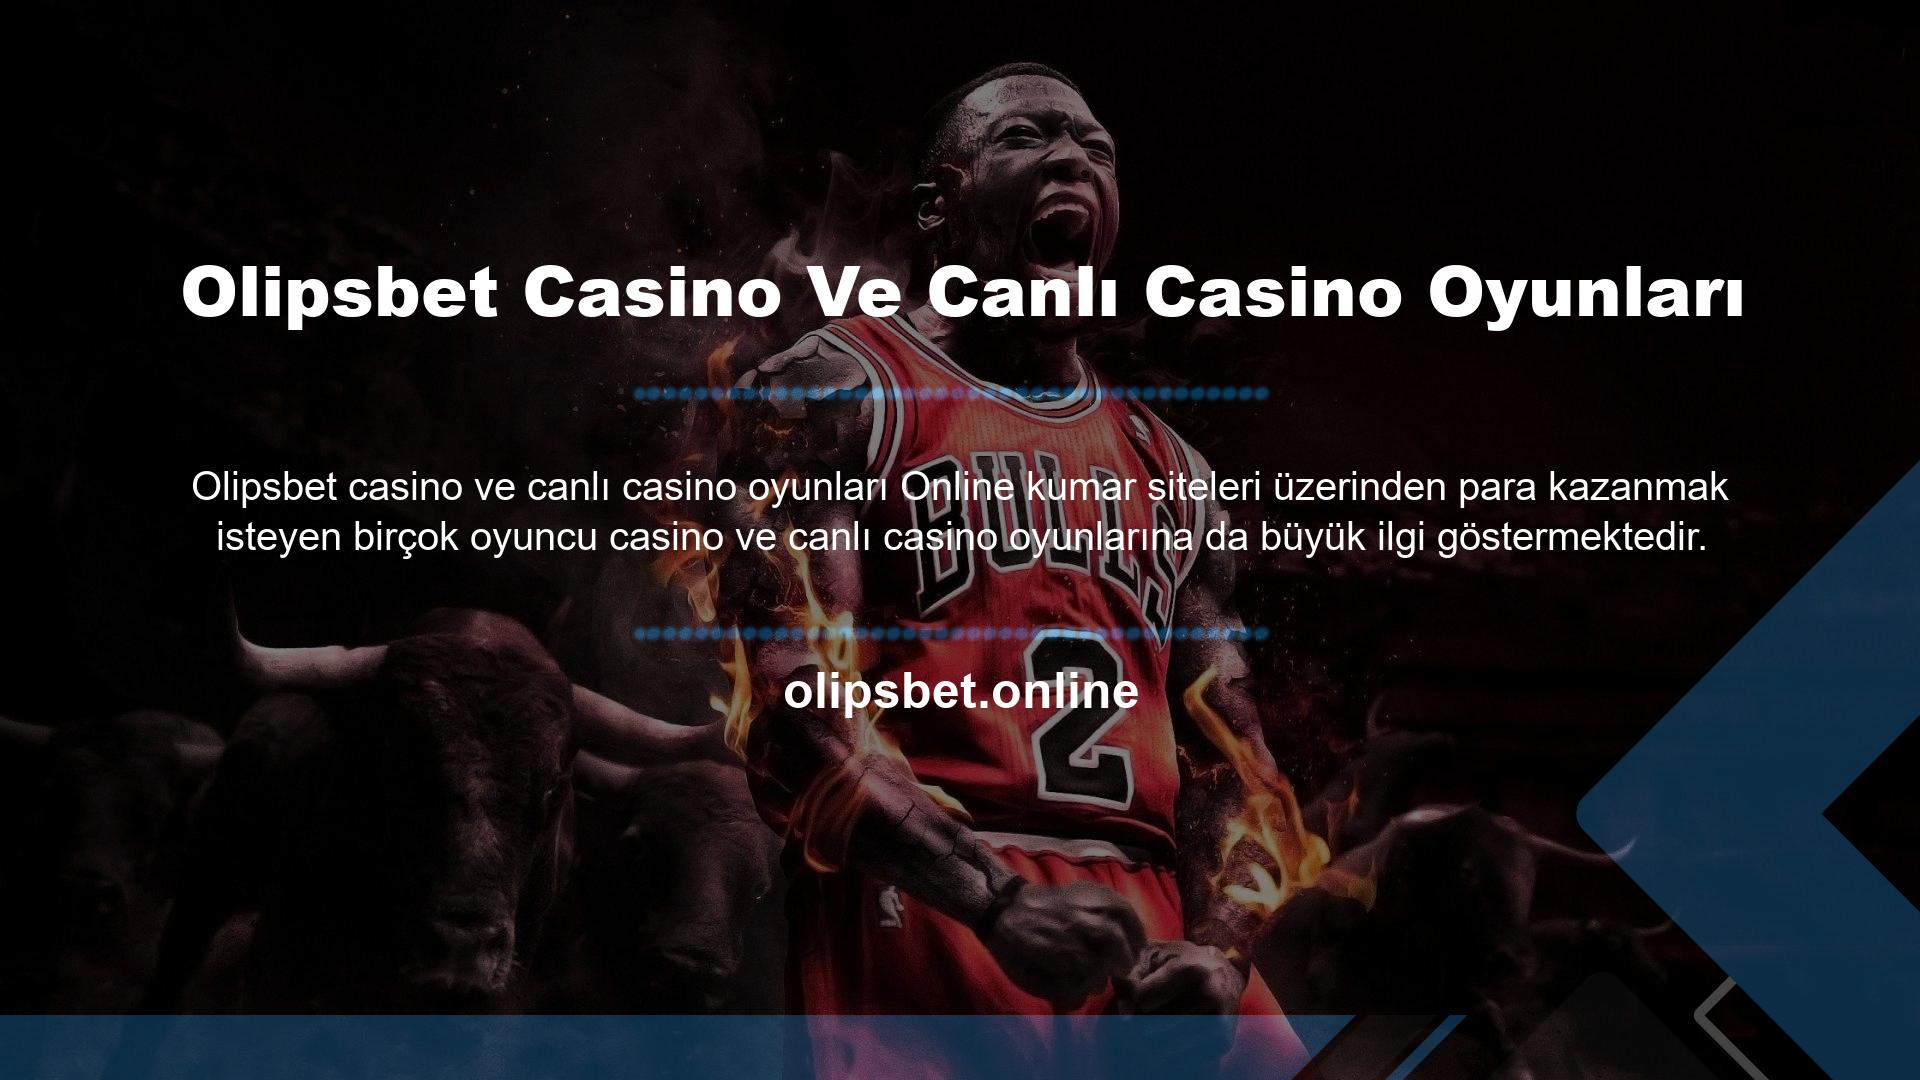 Olipsbet Casino Ve Canlı Casino Oyunları